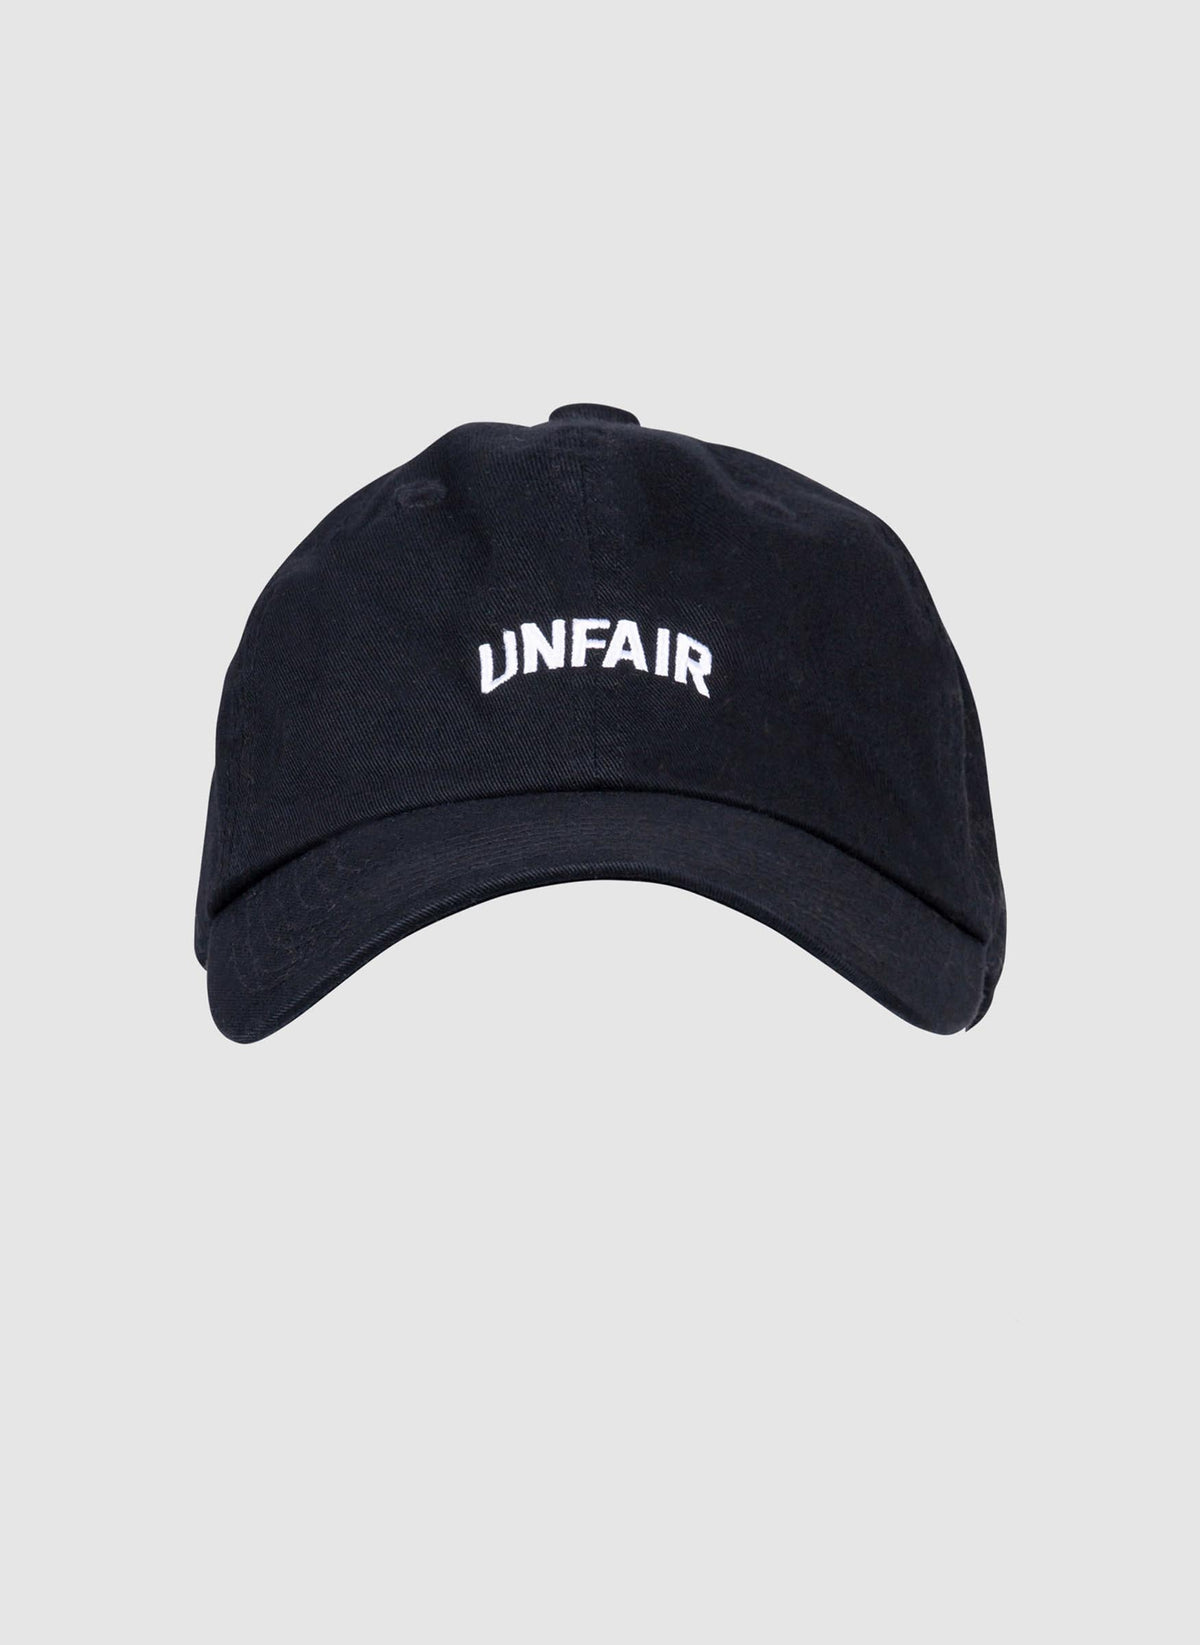 Unfair Cap - Black